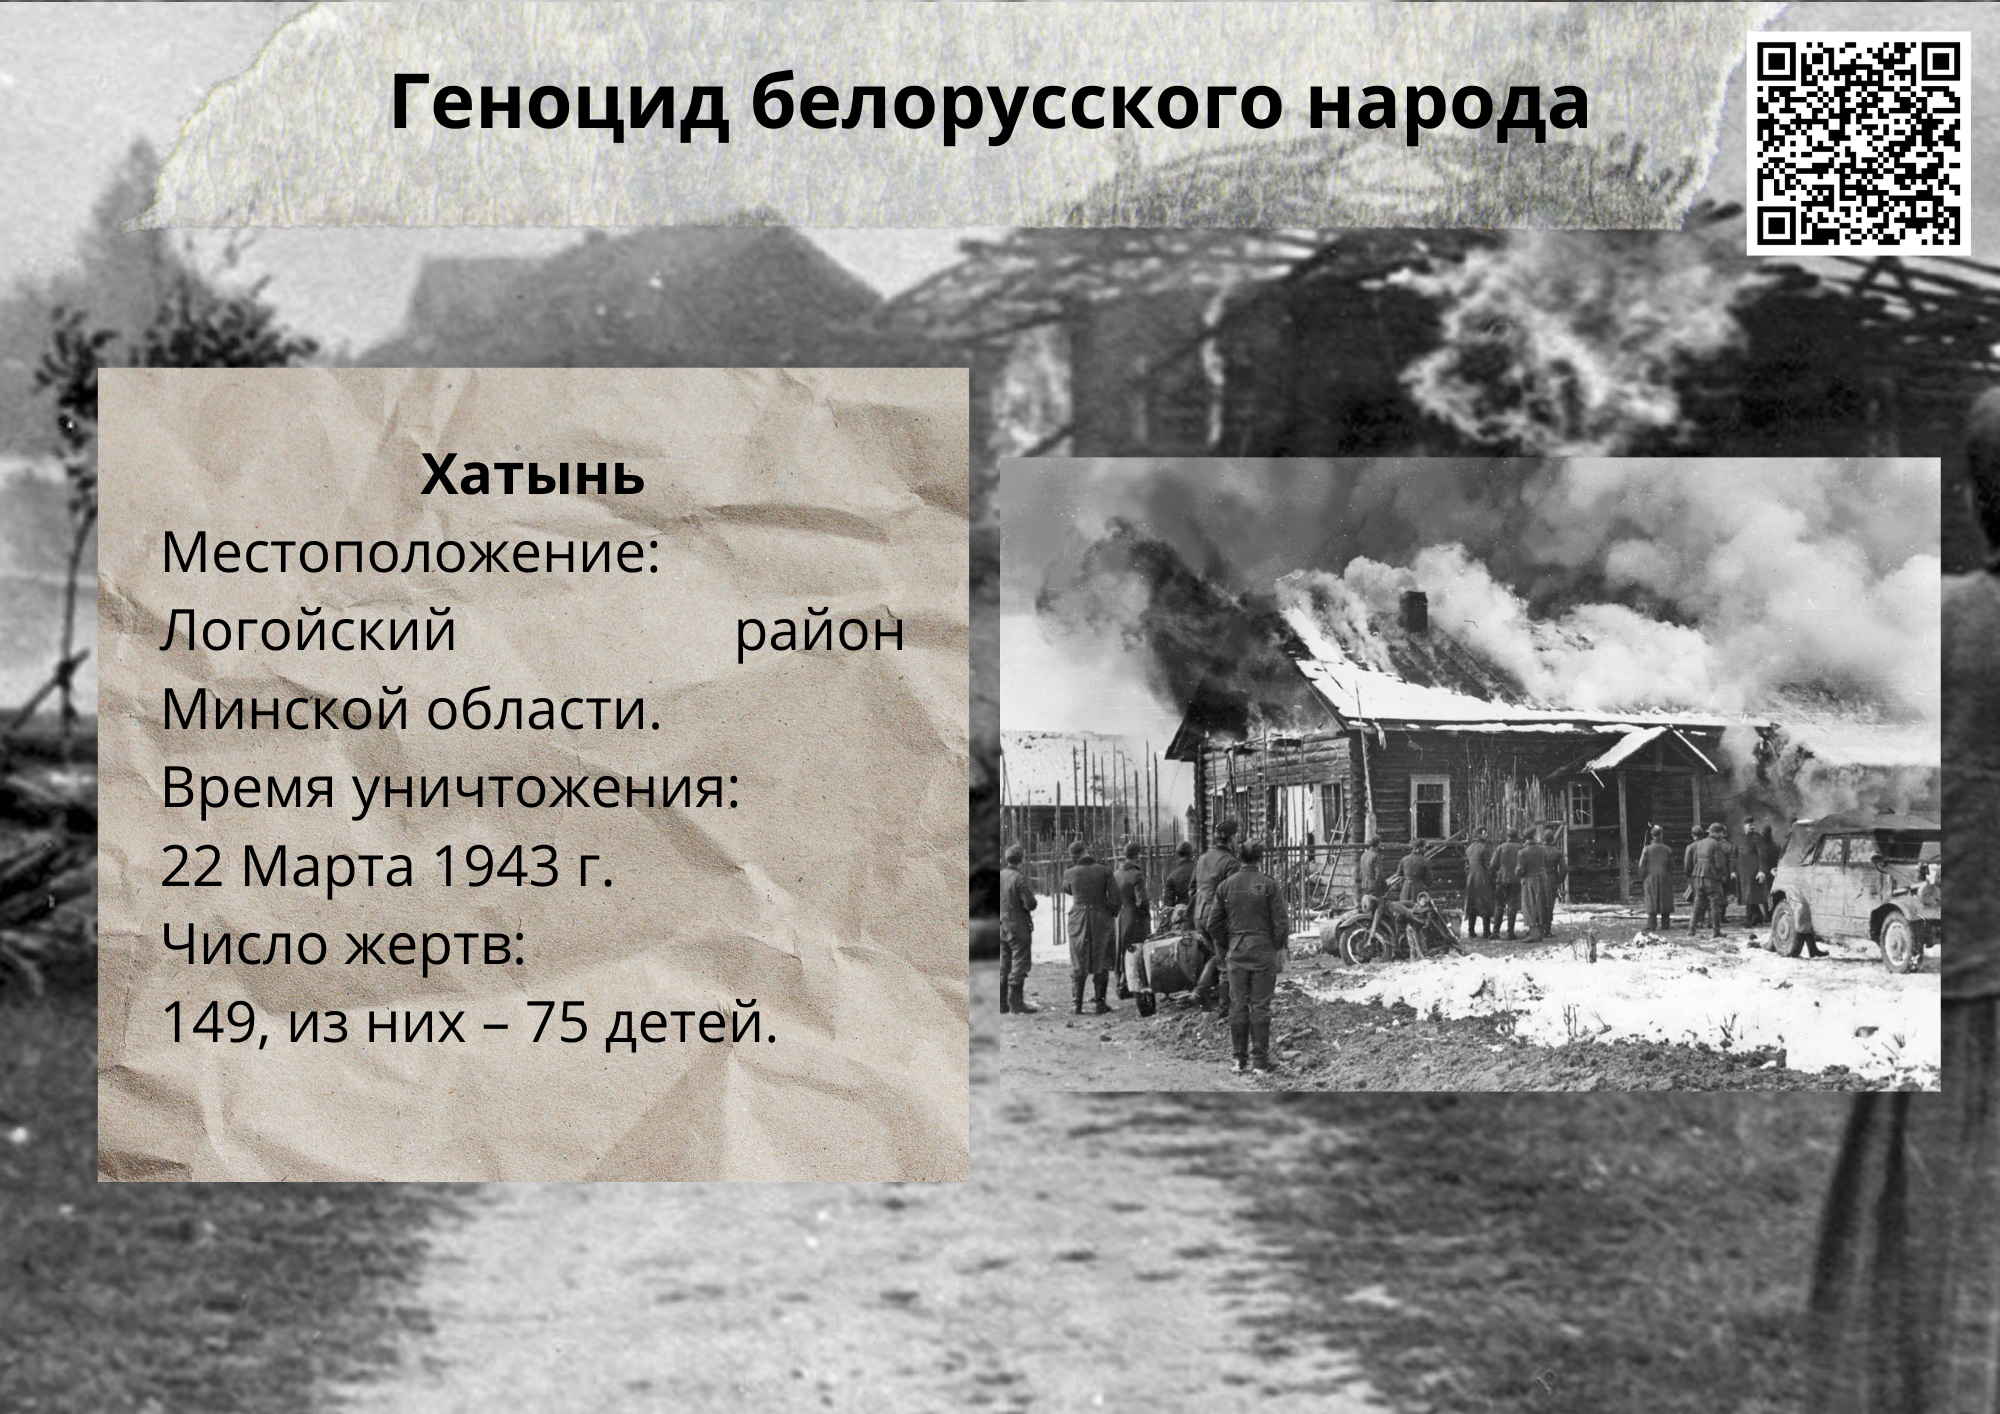 Стихи о геноциде. Геноцид белорусского народа. Геноцид белорусского народа в годы ВОВ.